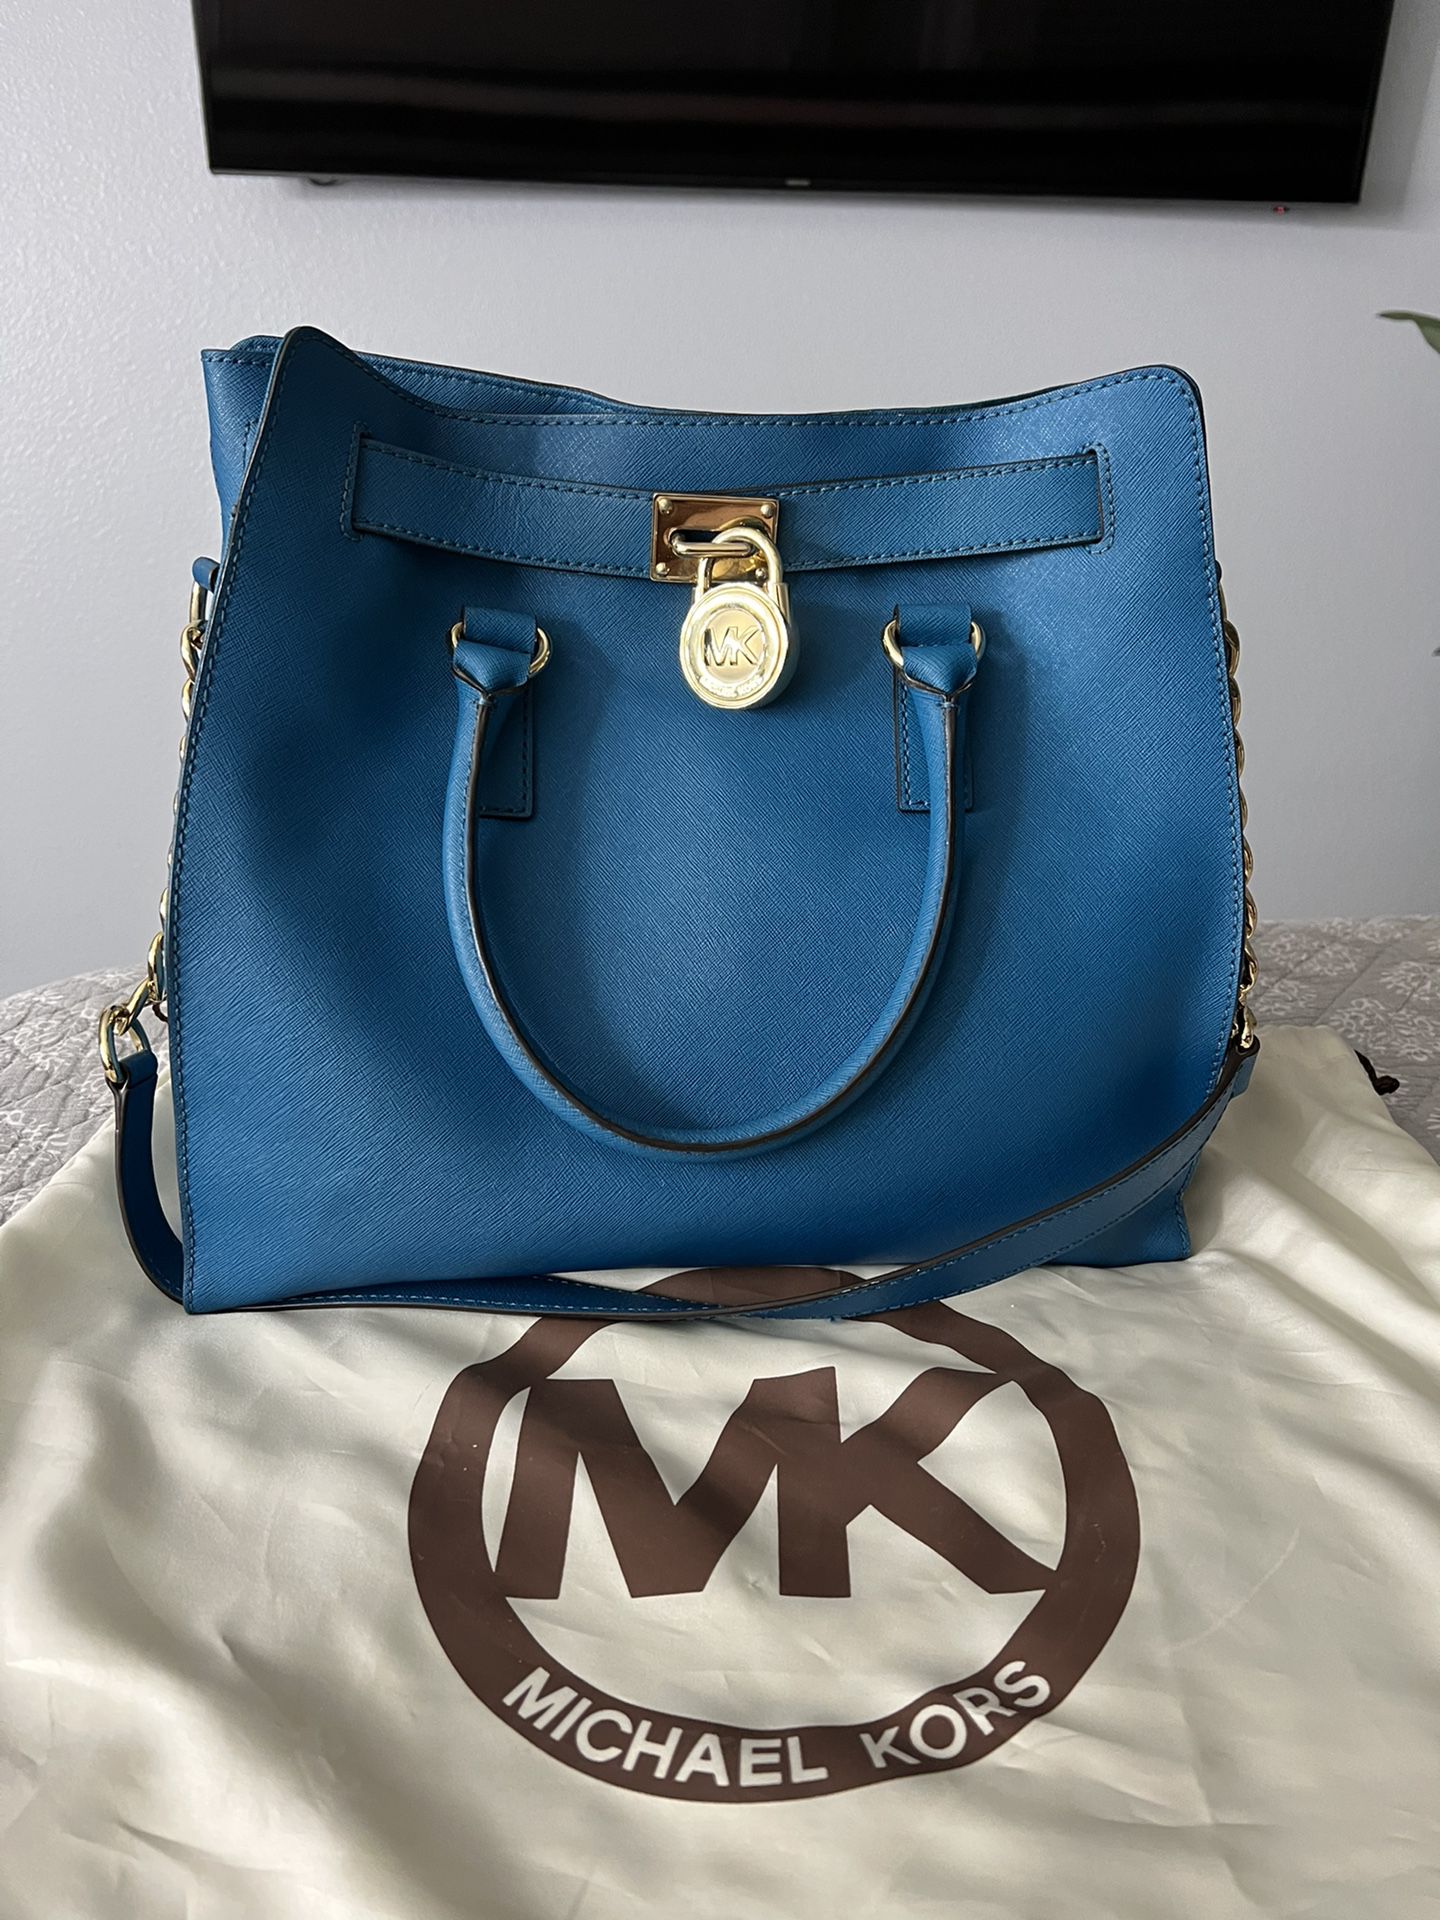 Adorable Michael Kors Turquoise handbag